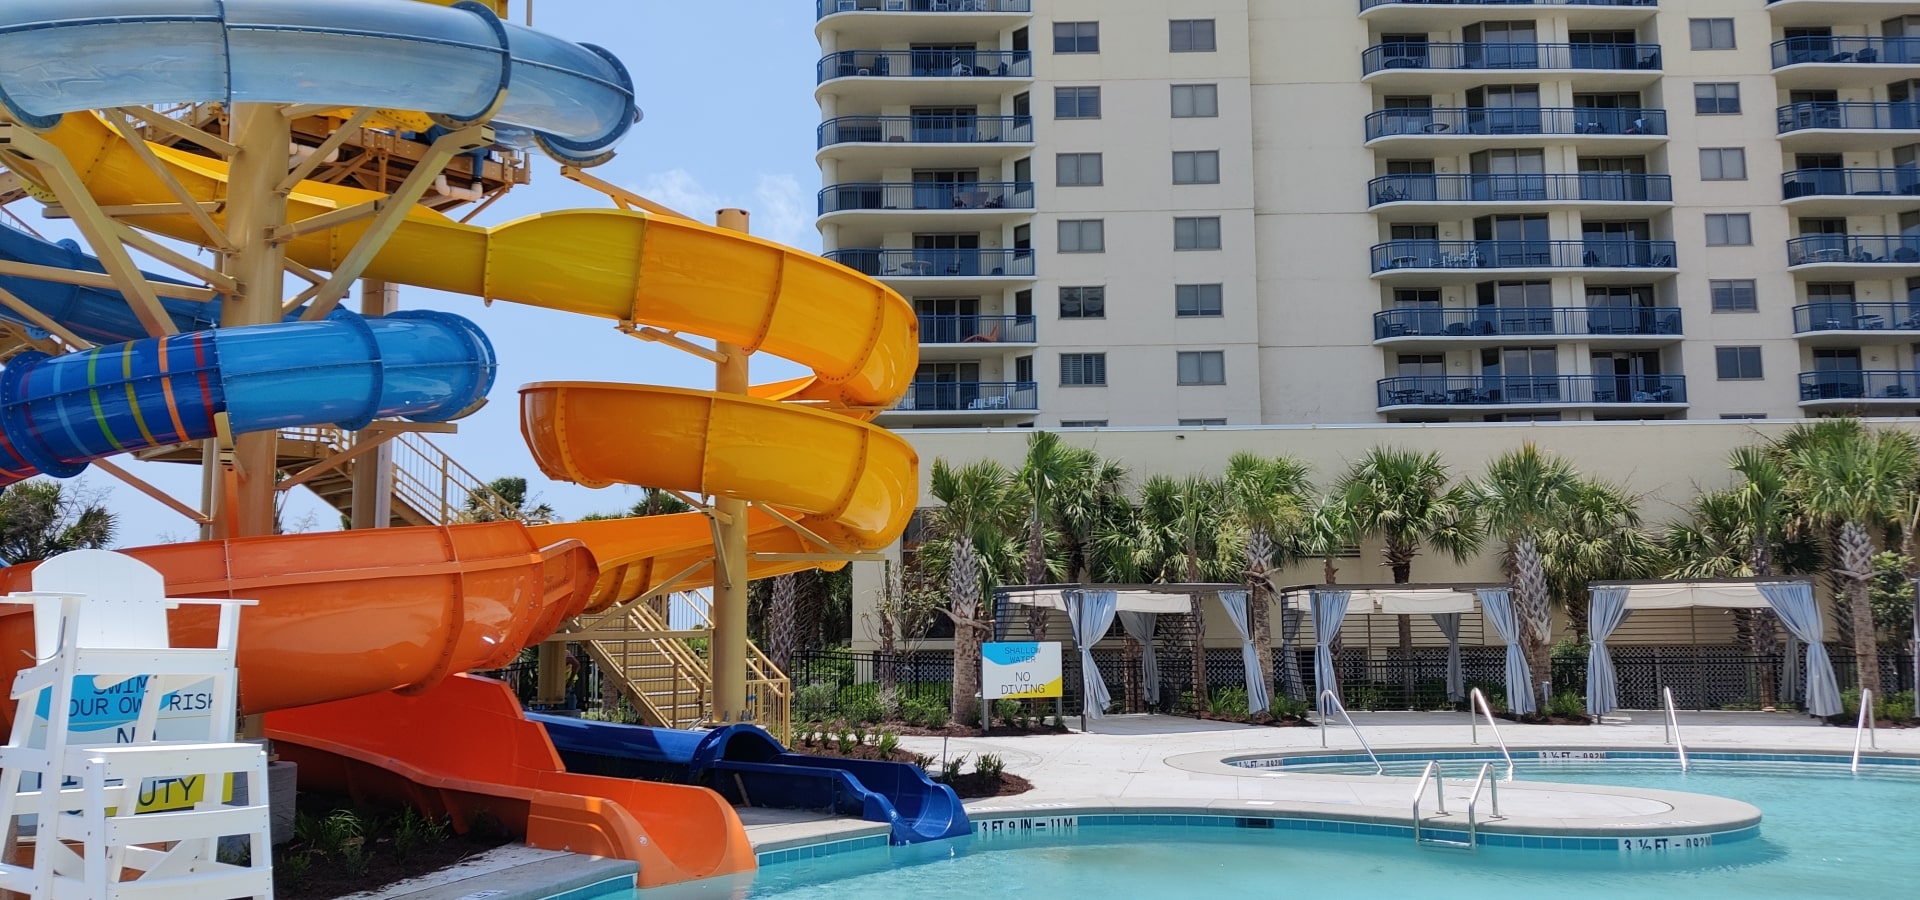 onsite amenities, pool with slide.